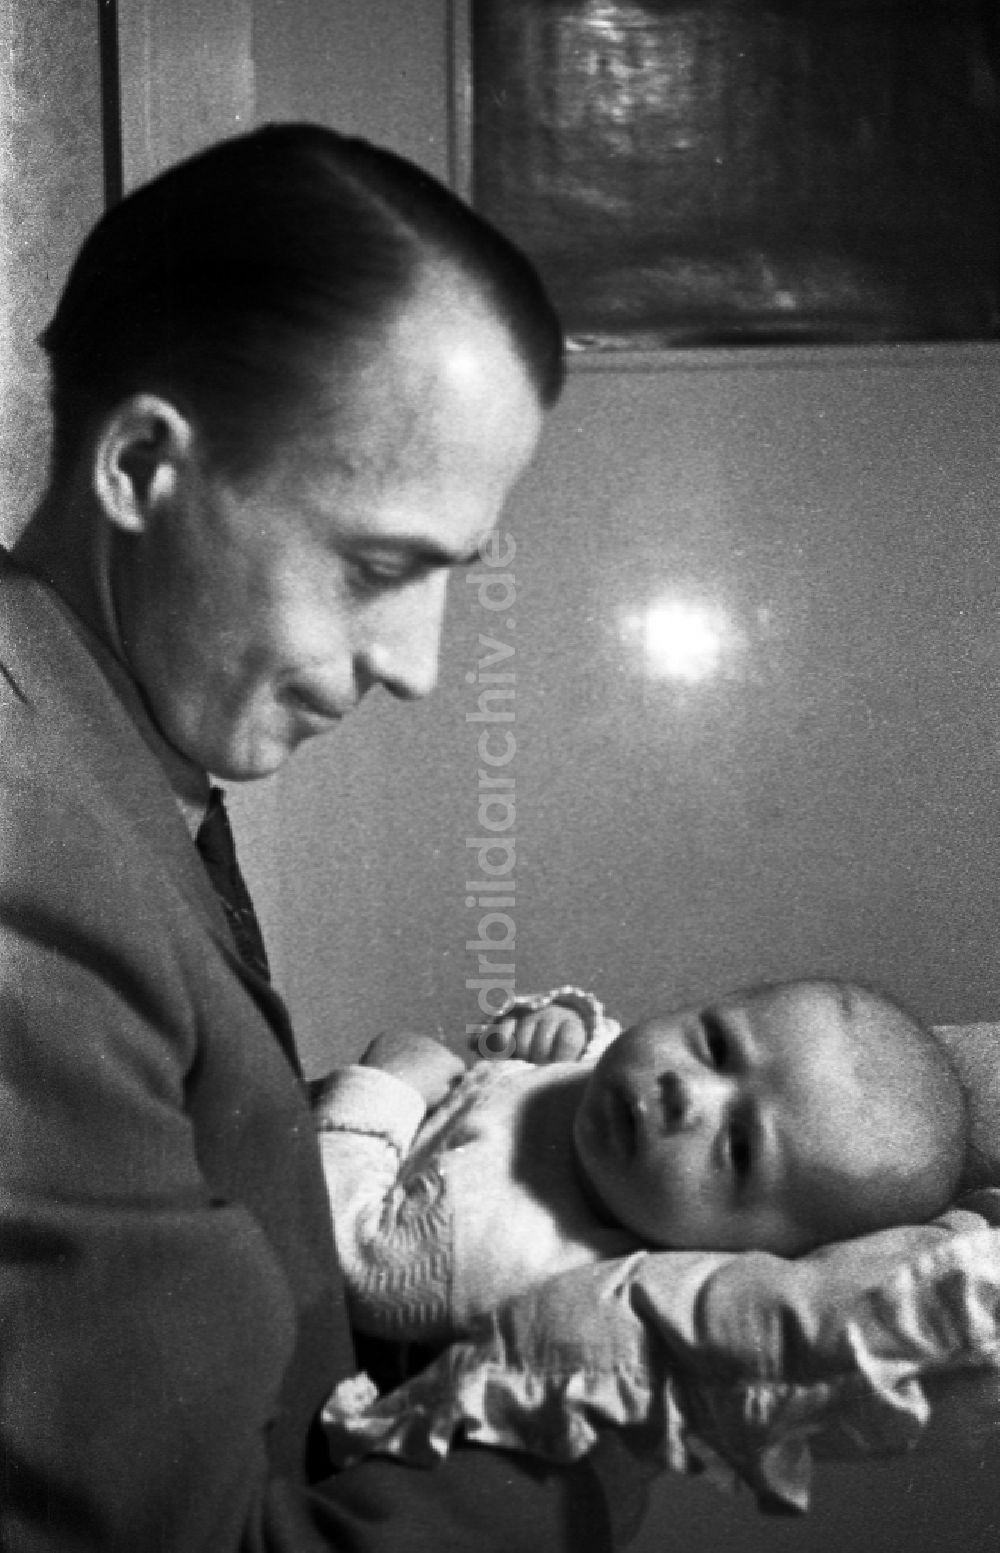 DDR-Fotoarchiv: Merseburg - Ein Vater hält stolz sein Baby auf dem Arm in Merseburg in Sachsen-Anhalt in der DDR